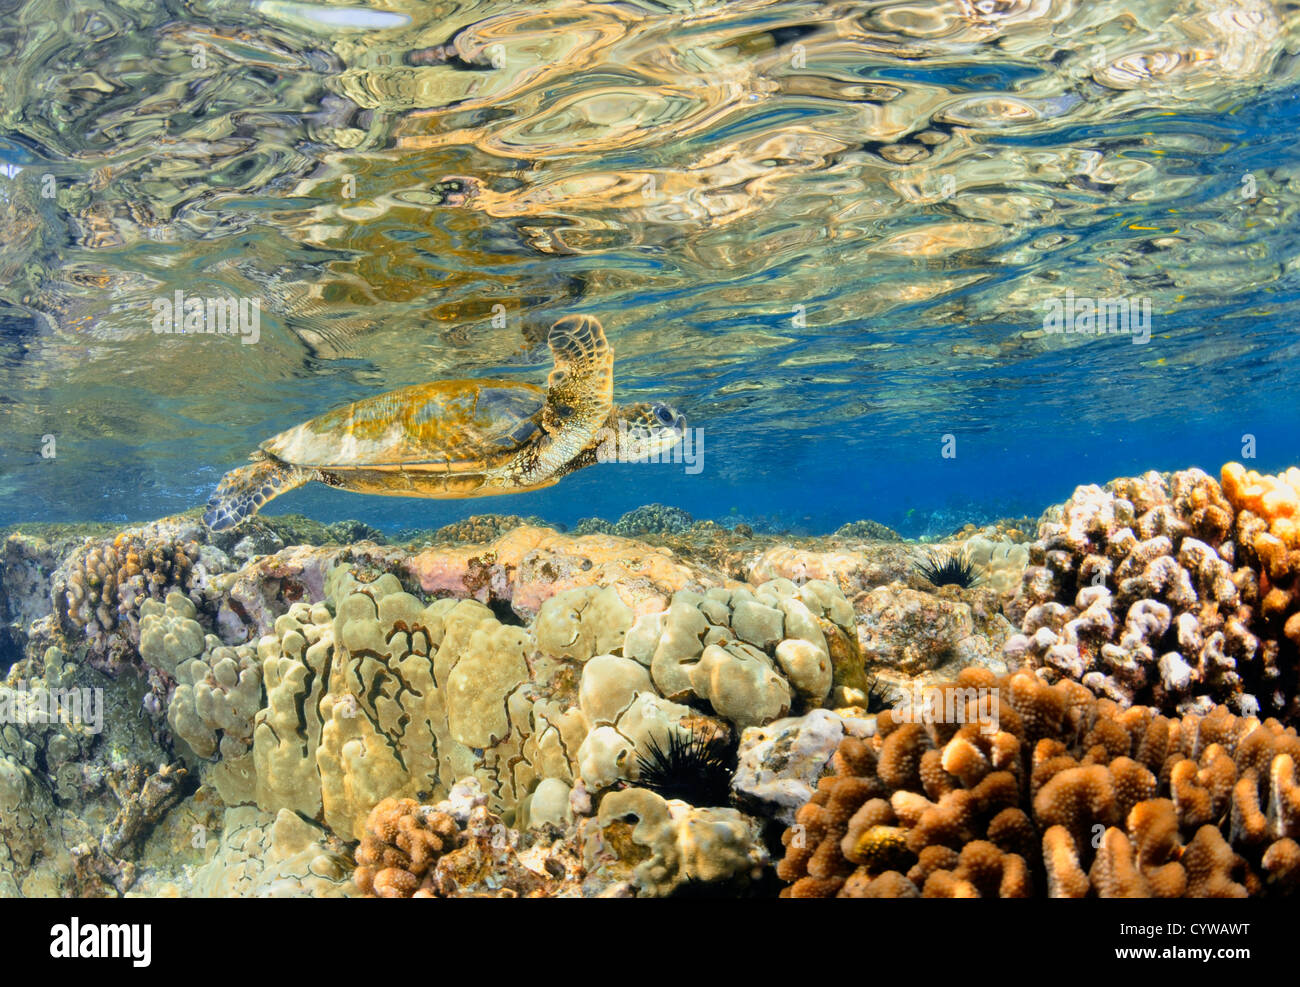 La tortue verte, Chelonia mydas, nage dans les récifs coralliens peu profonds, le capitaine Cook, Big Island, Hawaii, North Pacific Banque D'Images